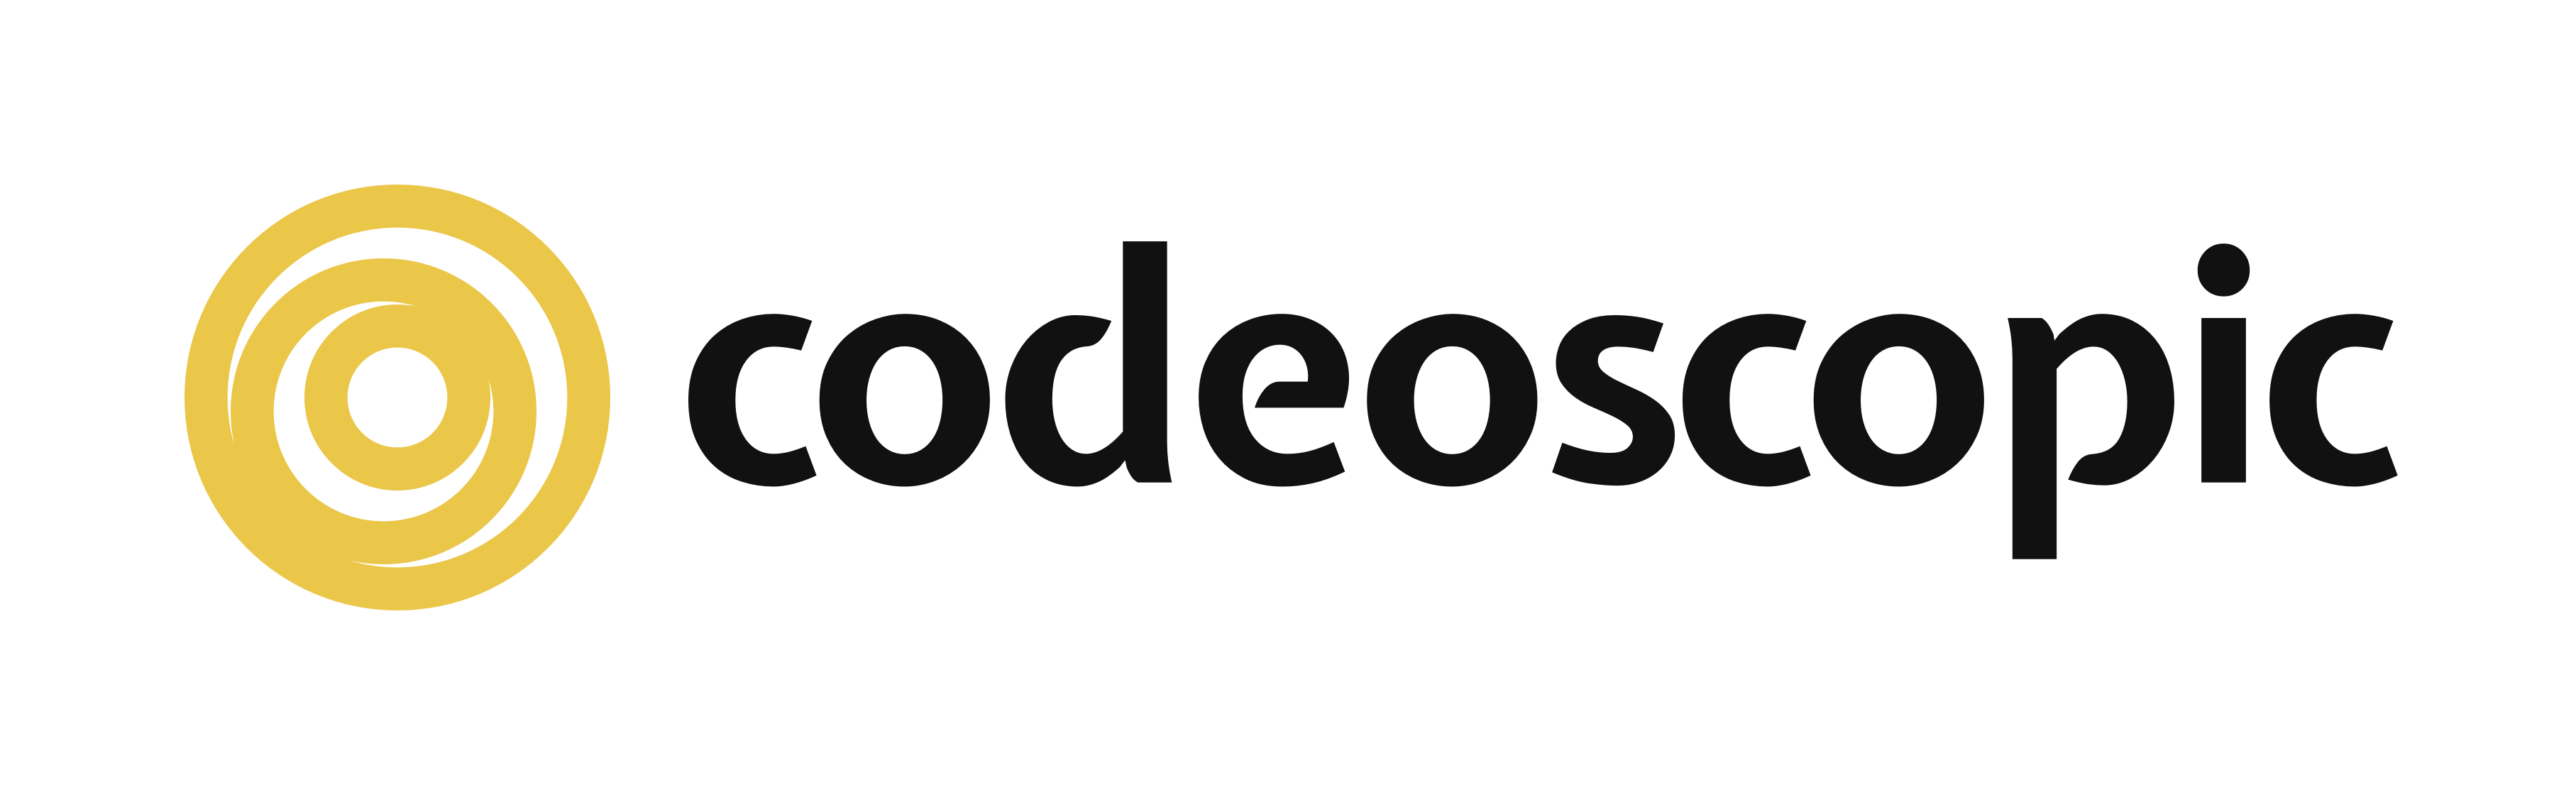 Logotipo Codeoscopic